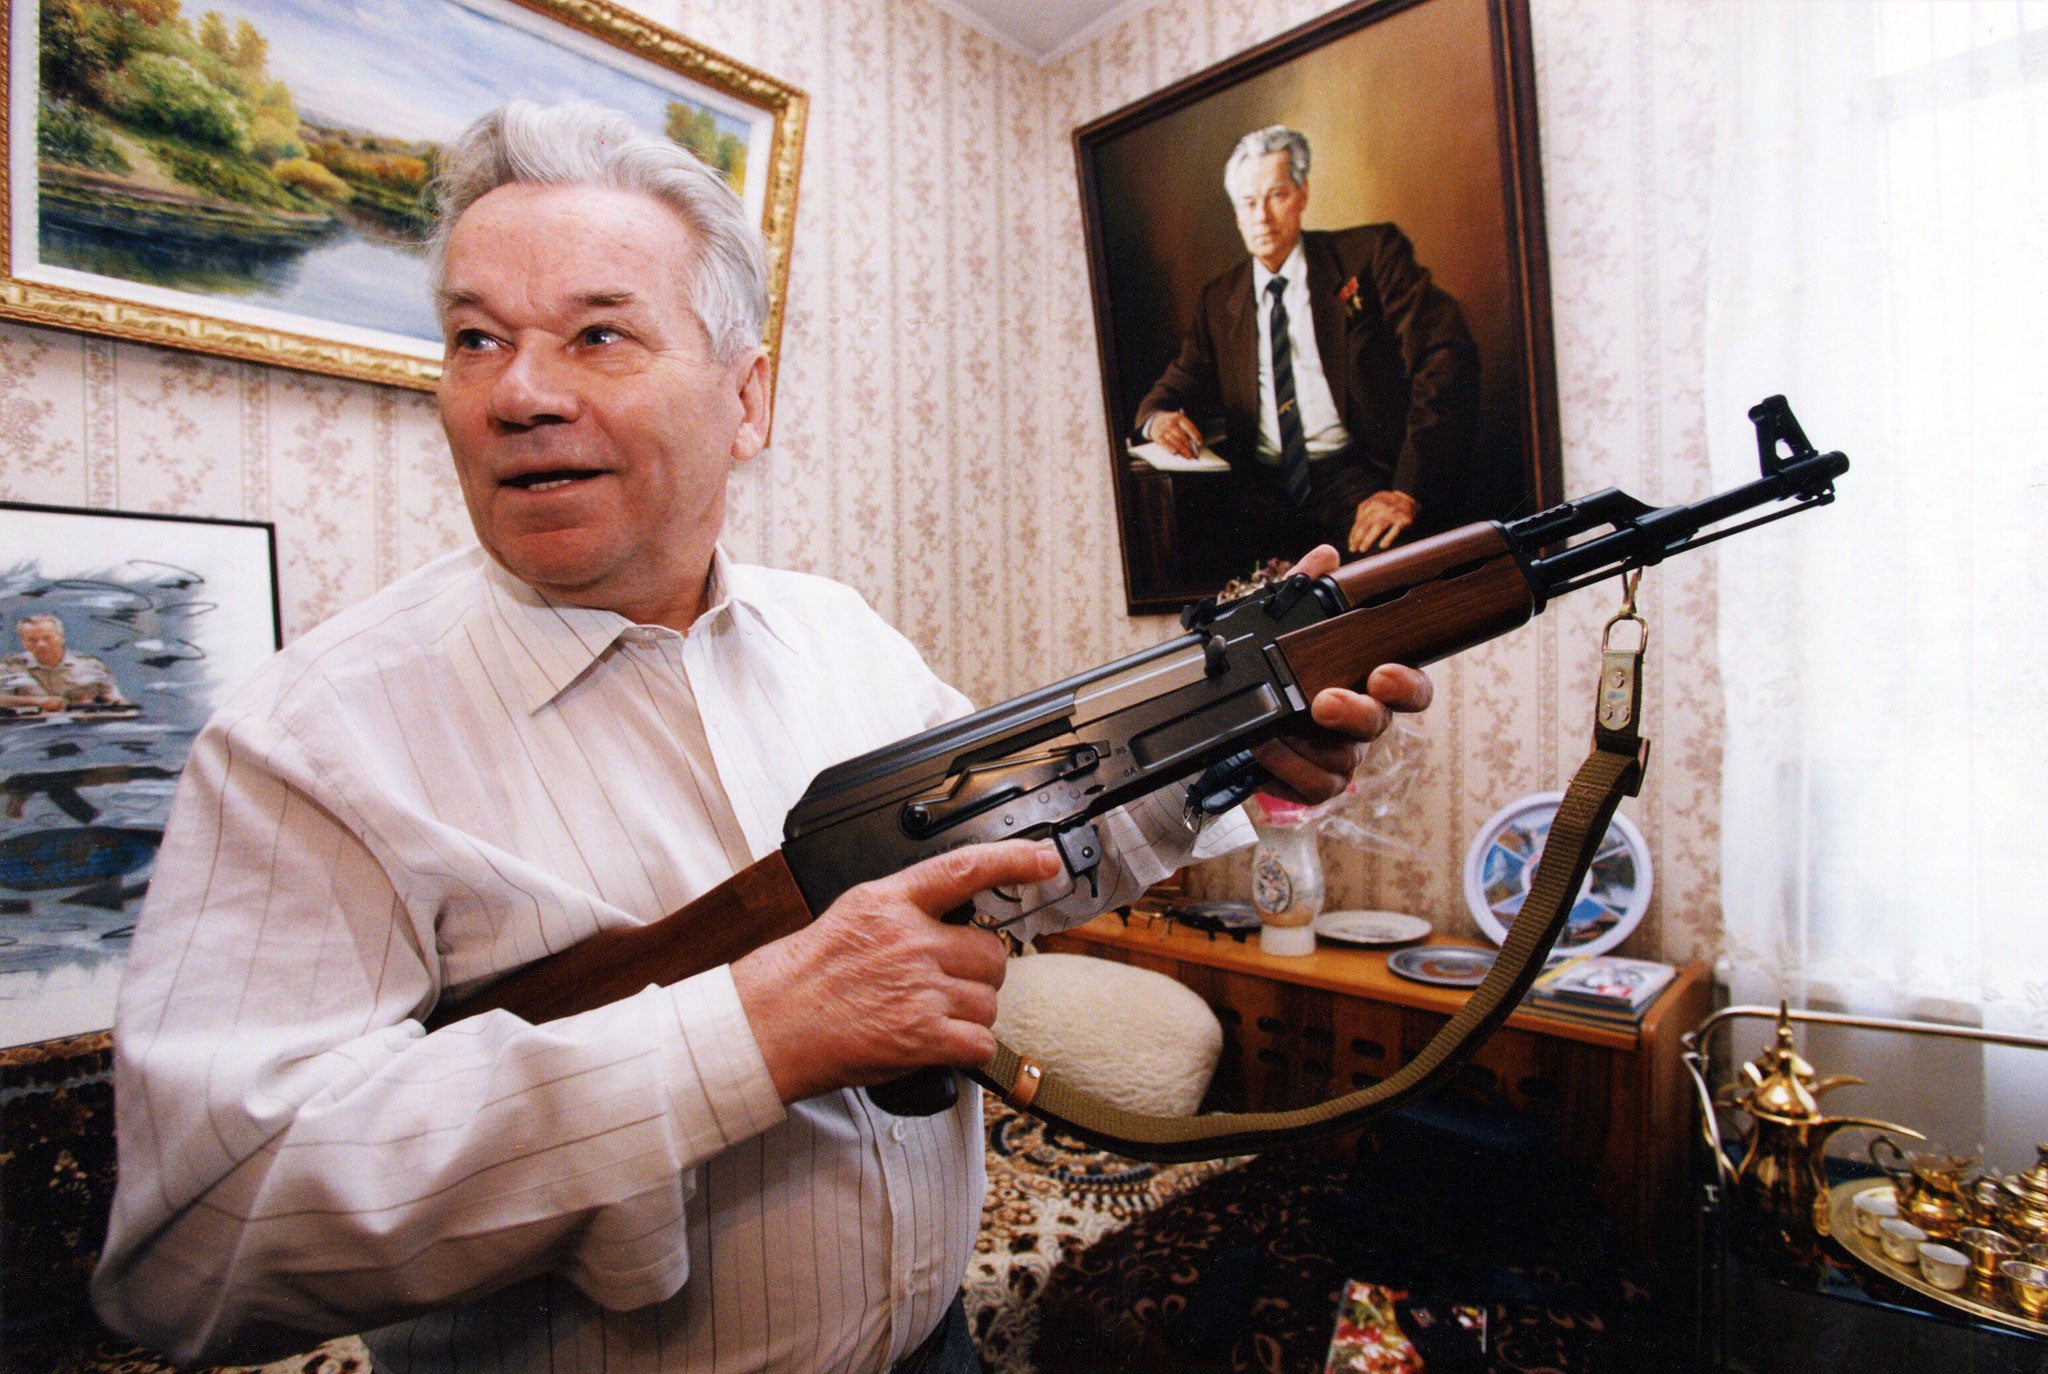 MIKHAIL KALASHNIKOV WITH AN AK-47 RIFLE